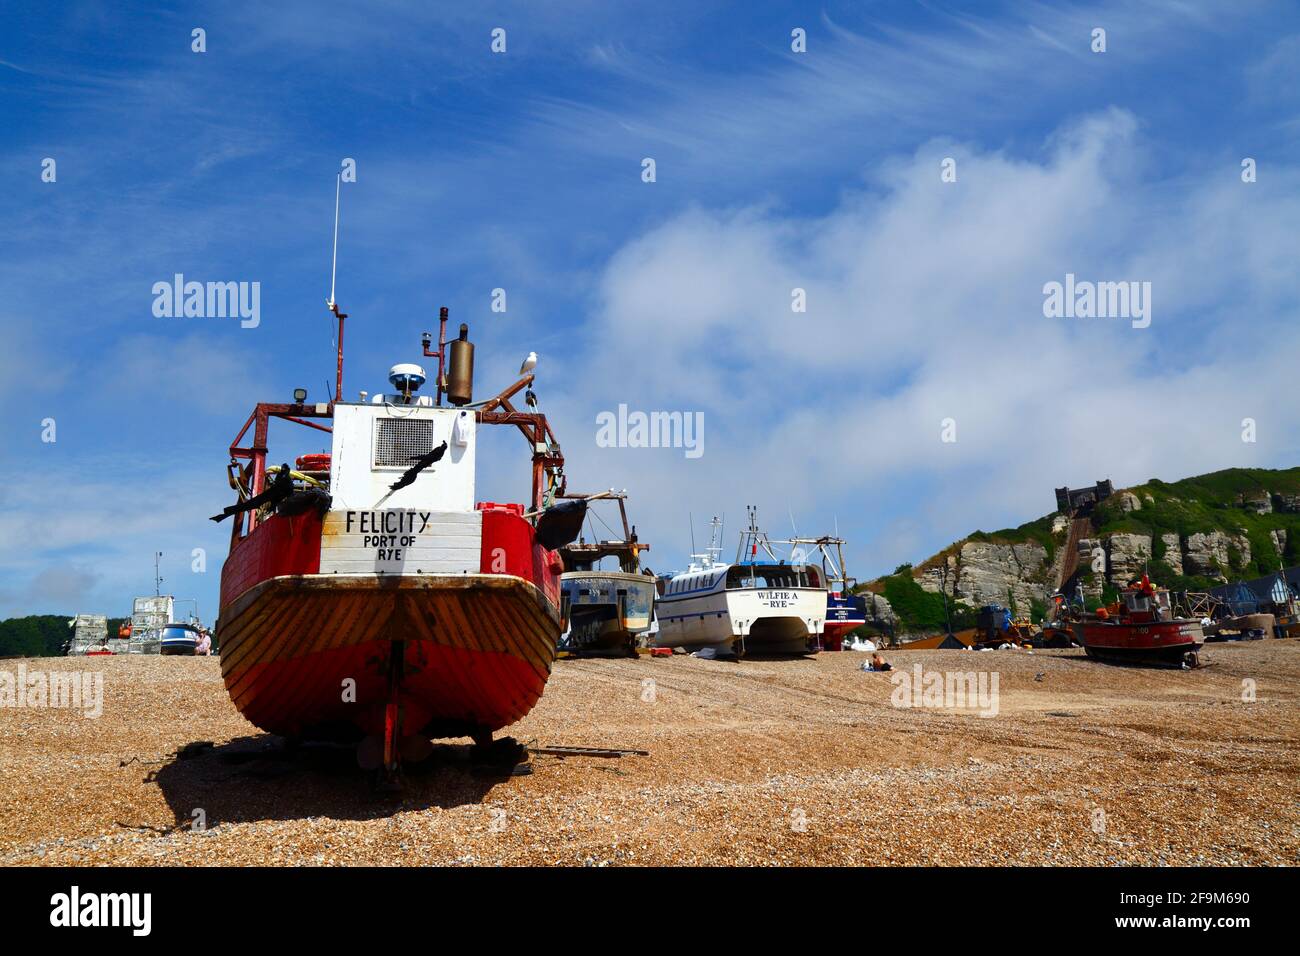 Fischerboot registriert in Port of Rye am Stade Kiesstrand, East Hill Cliff im Hintergrund, Hastings, East Sussex, England, Großbritannien Stockfoto